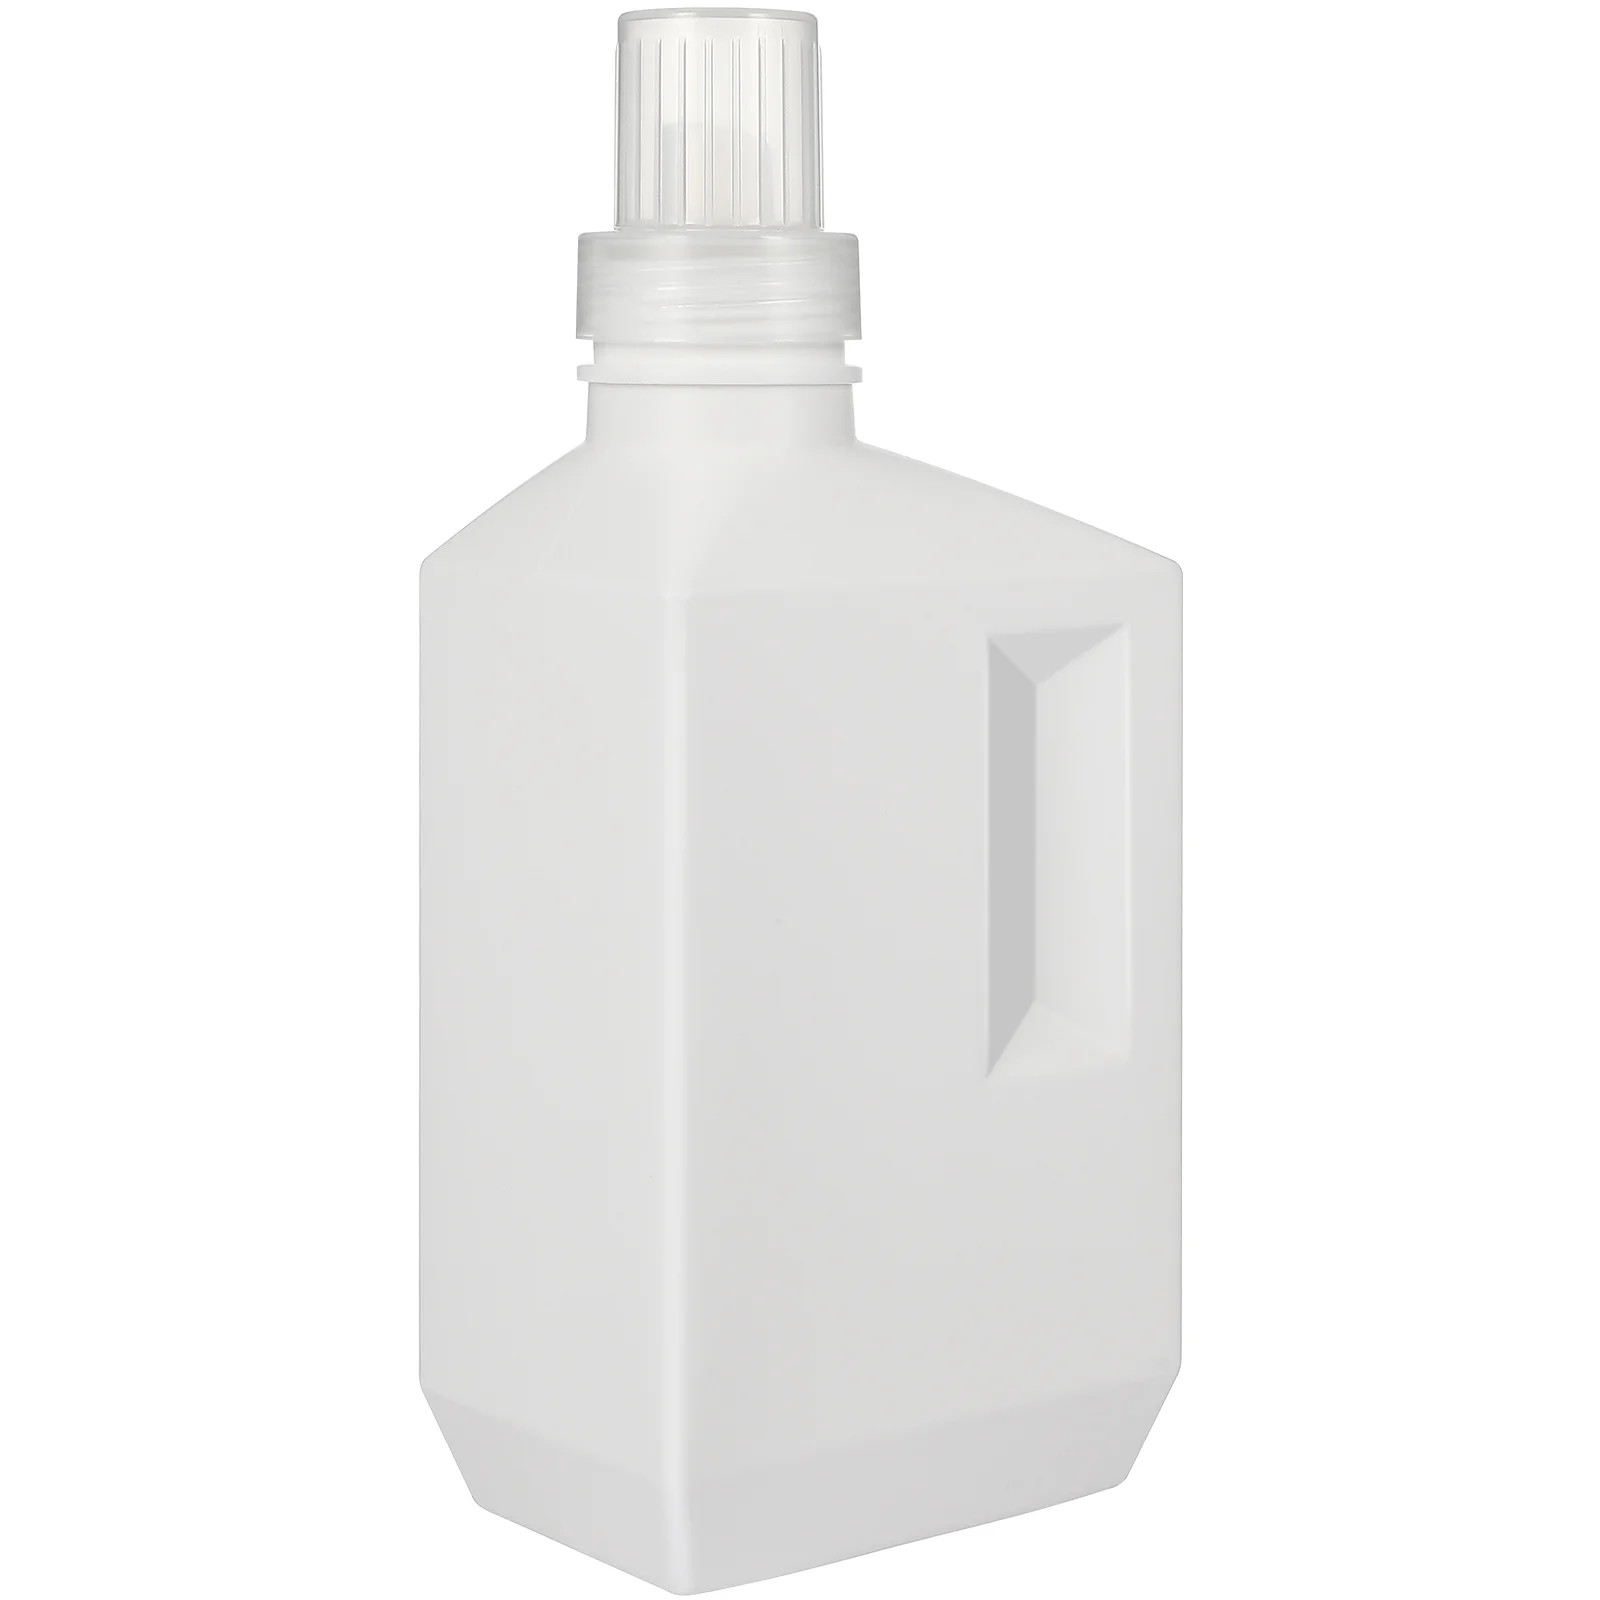 

Detergent Bottle Laundry Liquid Dispenser Shampoo Refillable Soap Container Travel Pour Plastic Empty Lotion Lotions Foaming